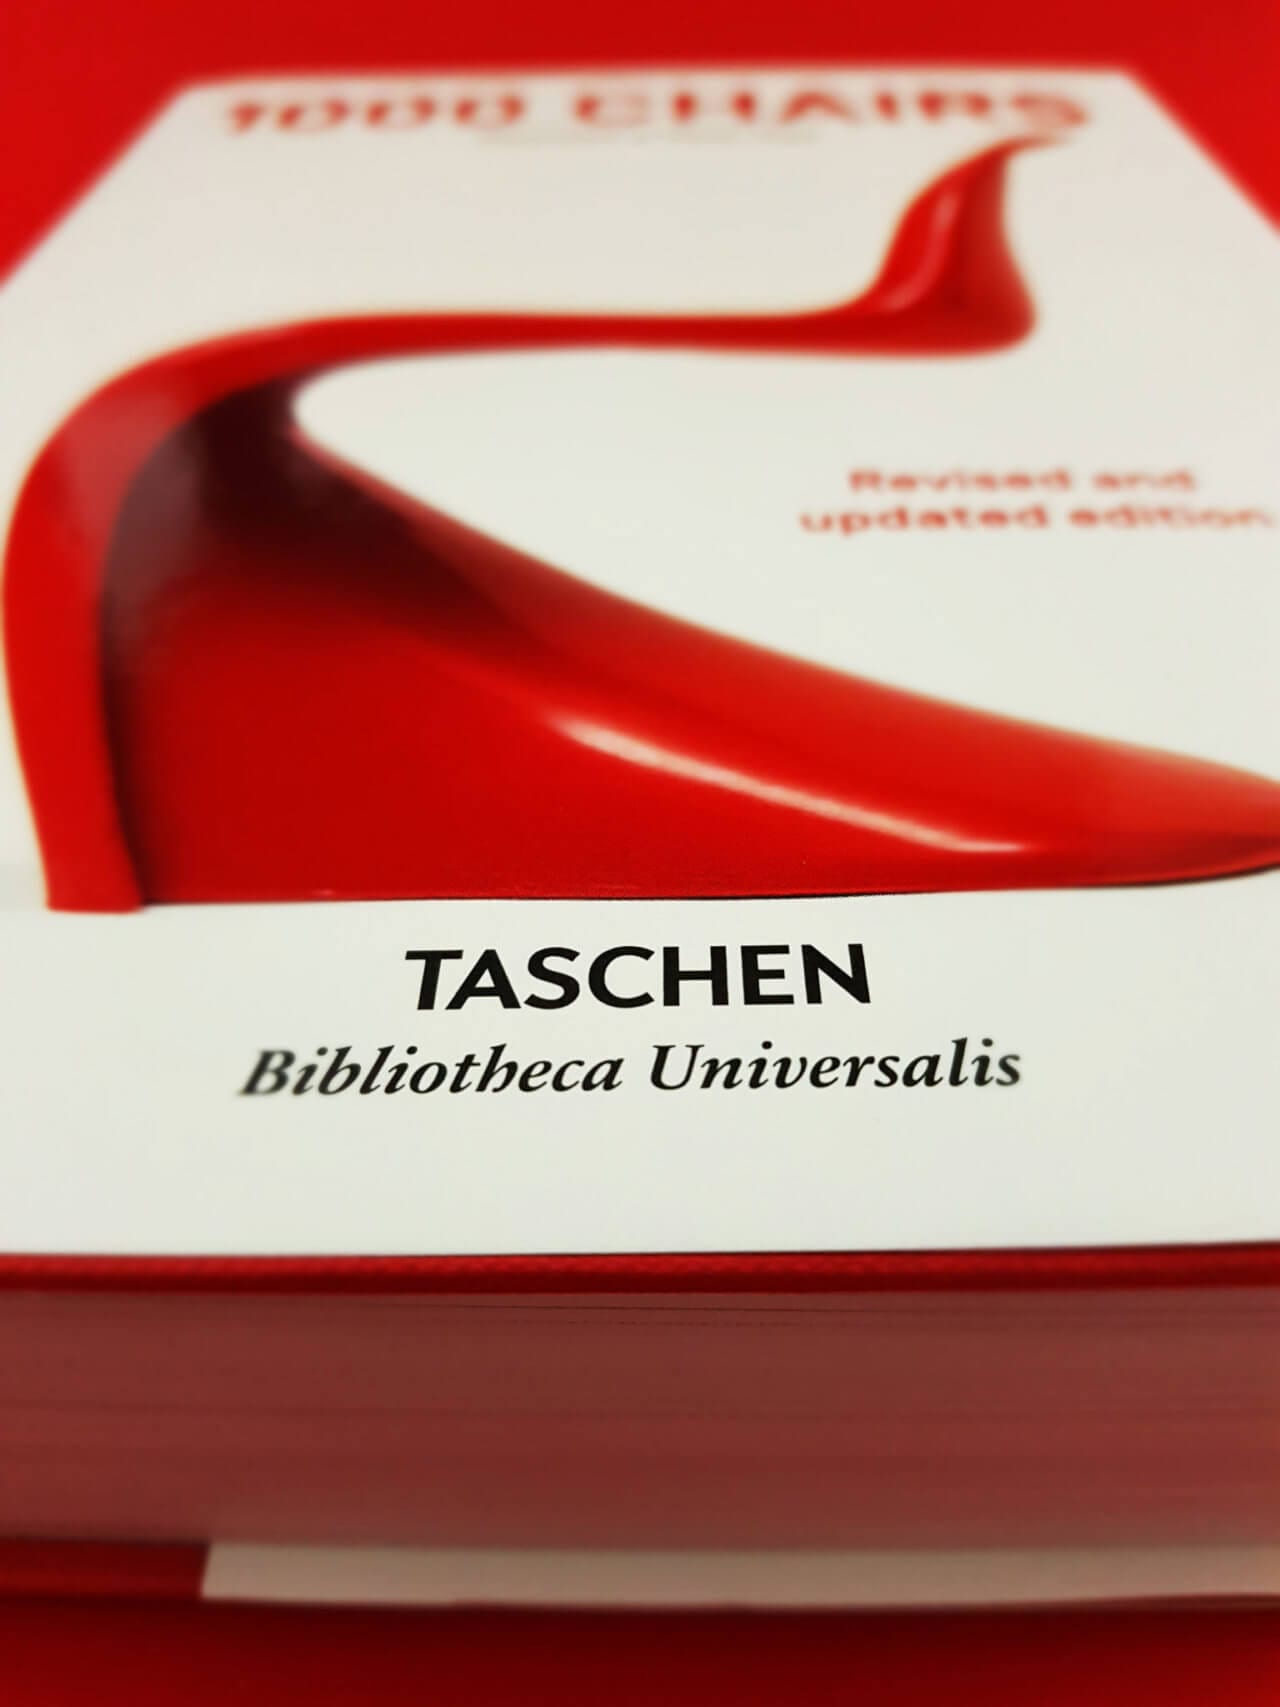 1000 Chairs TASCHEN Verlag Logo Detailansicht